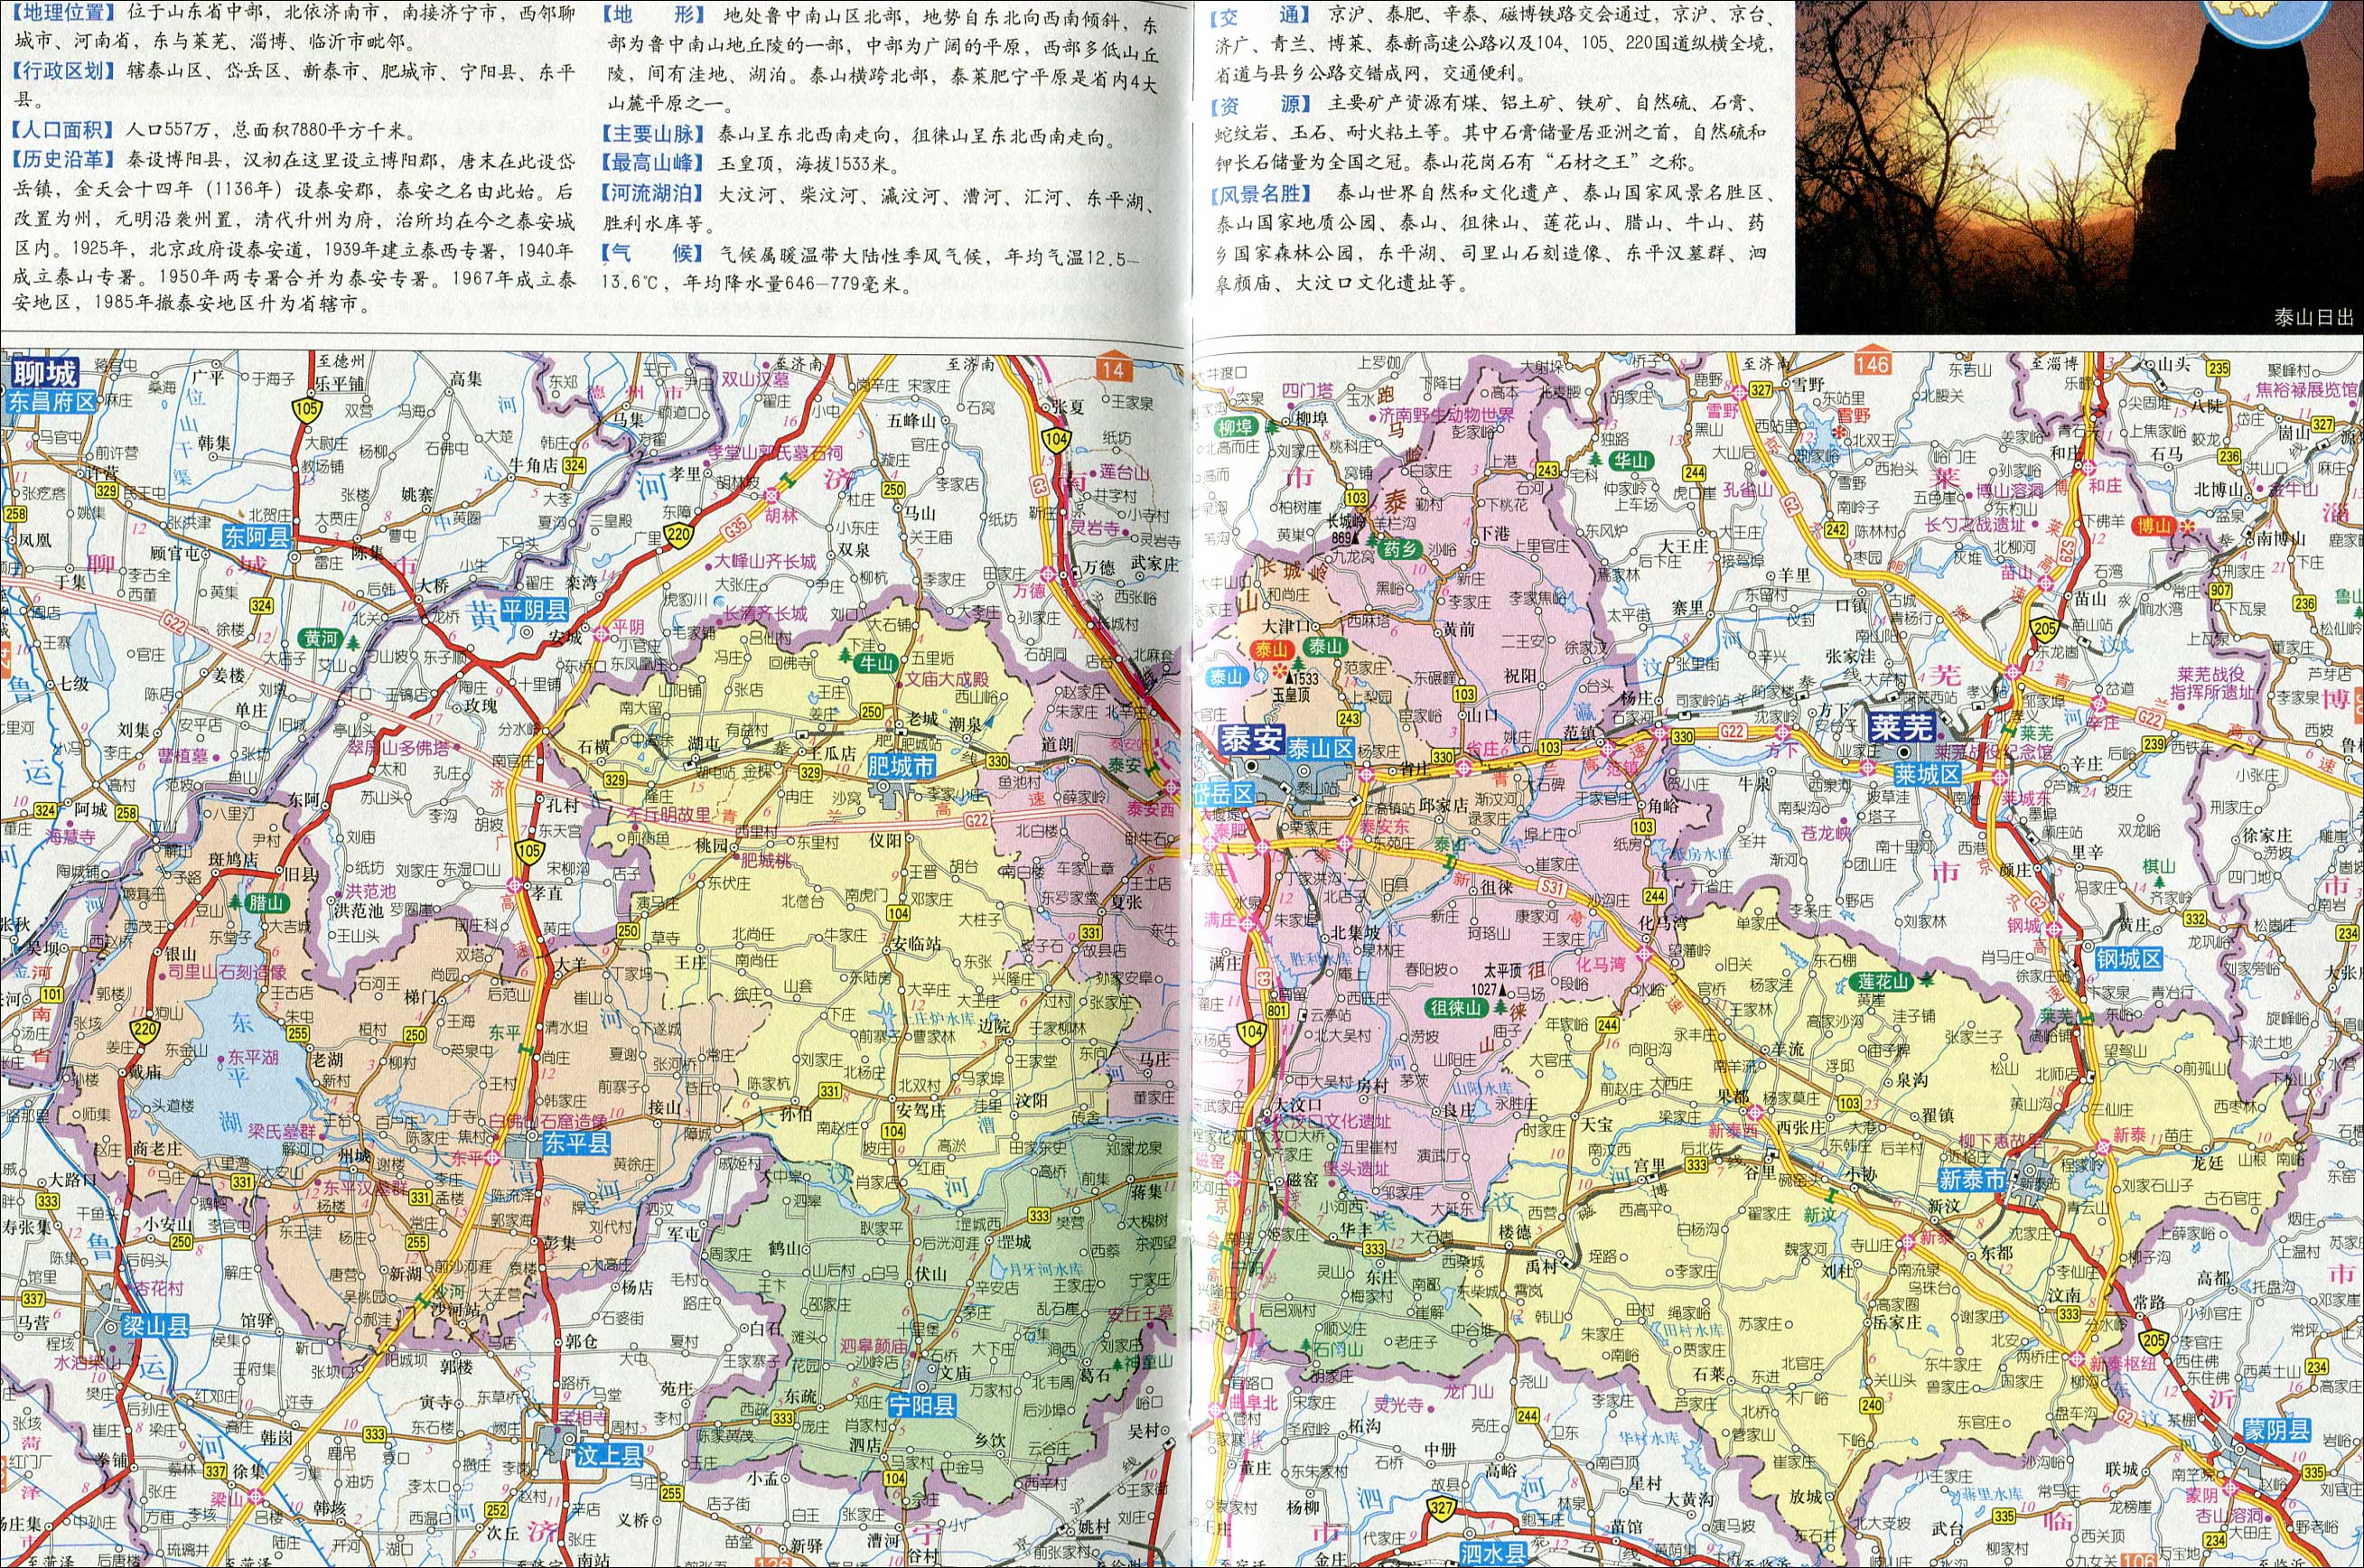 中国地图 山东 泰安市 >> 泰安市地图  相关链接: 济南市  青岛市图片